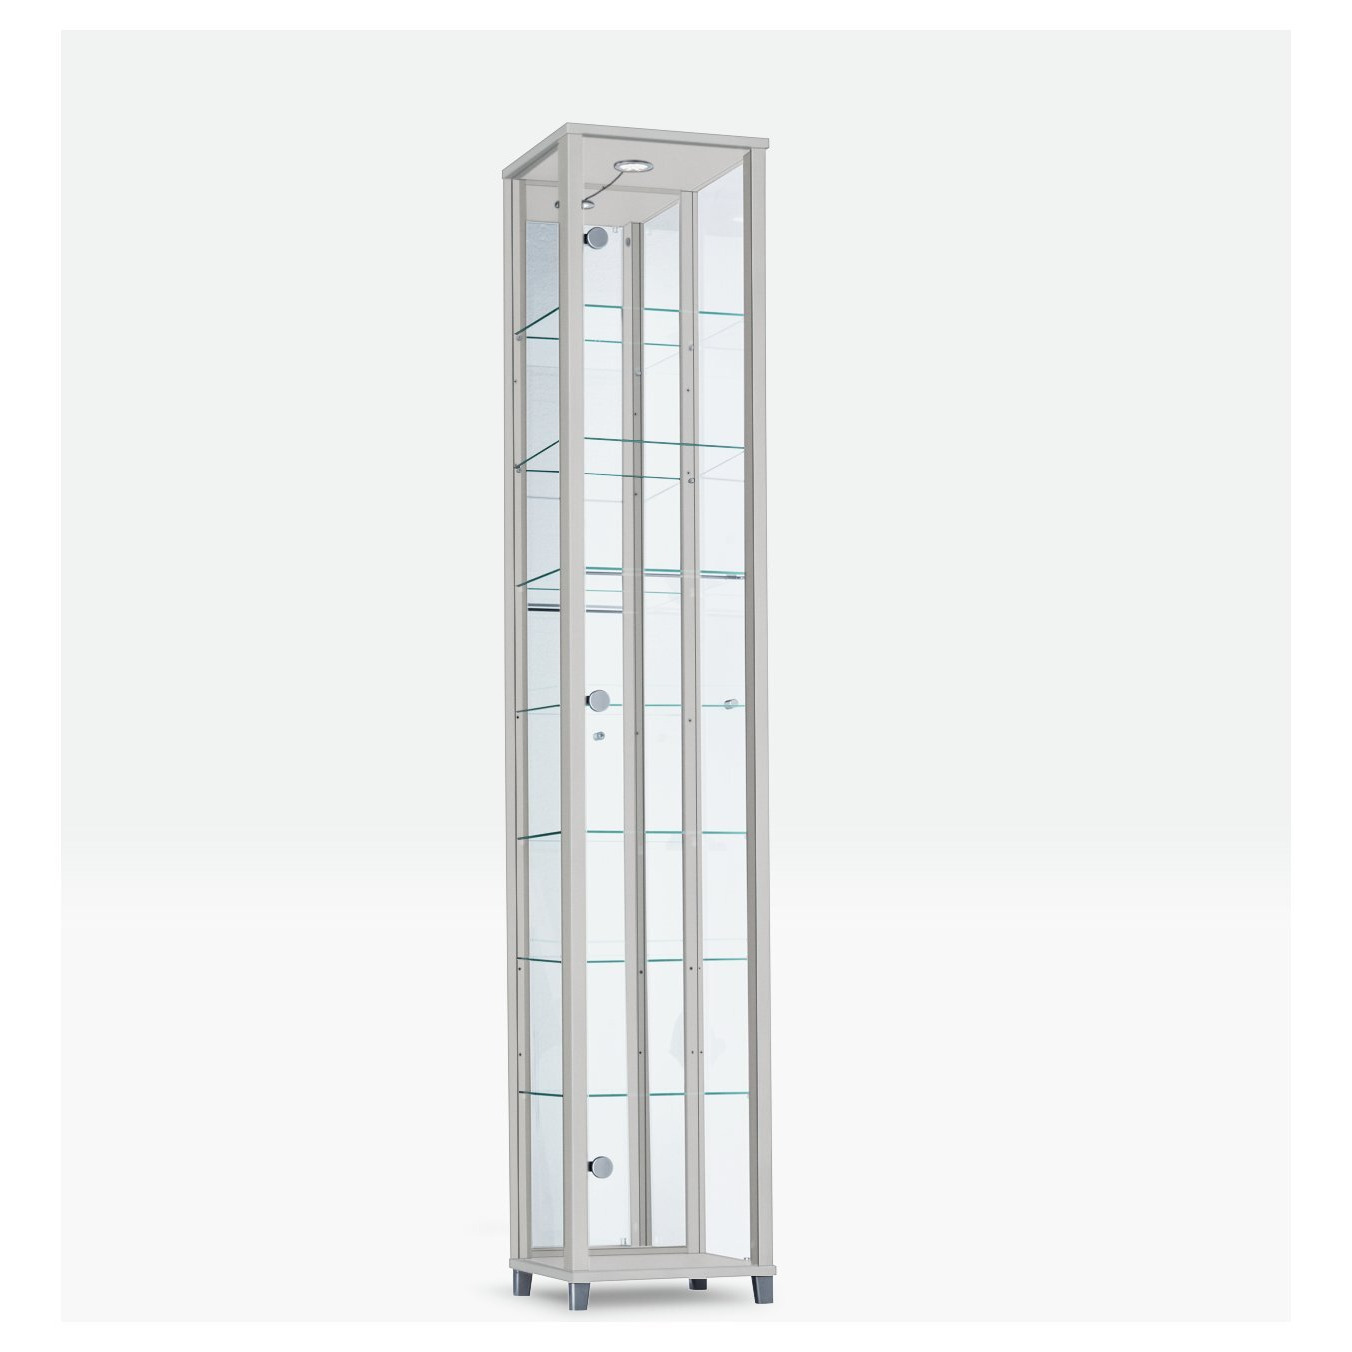 Argos Home 4 Shelf 1 Door Display Cabinet - Silver - image 1